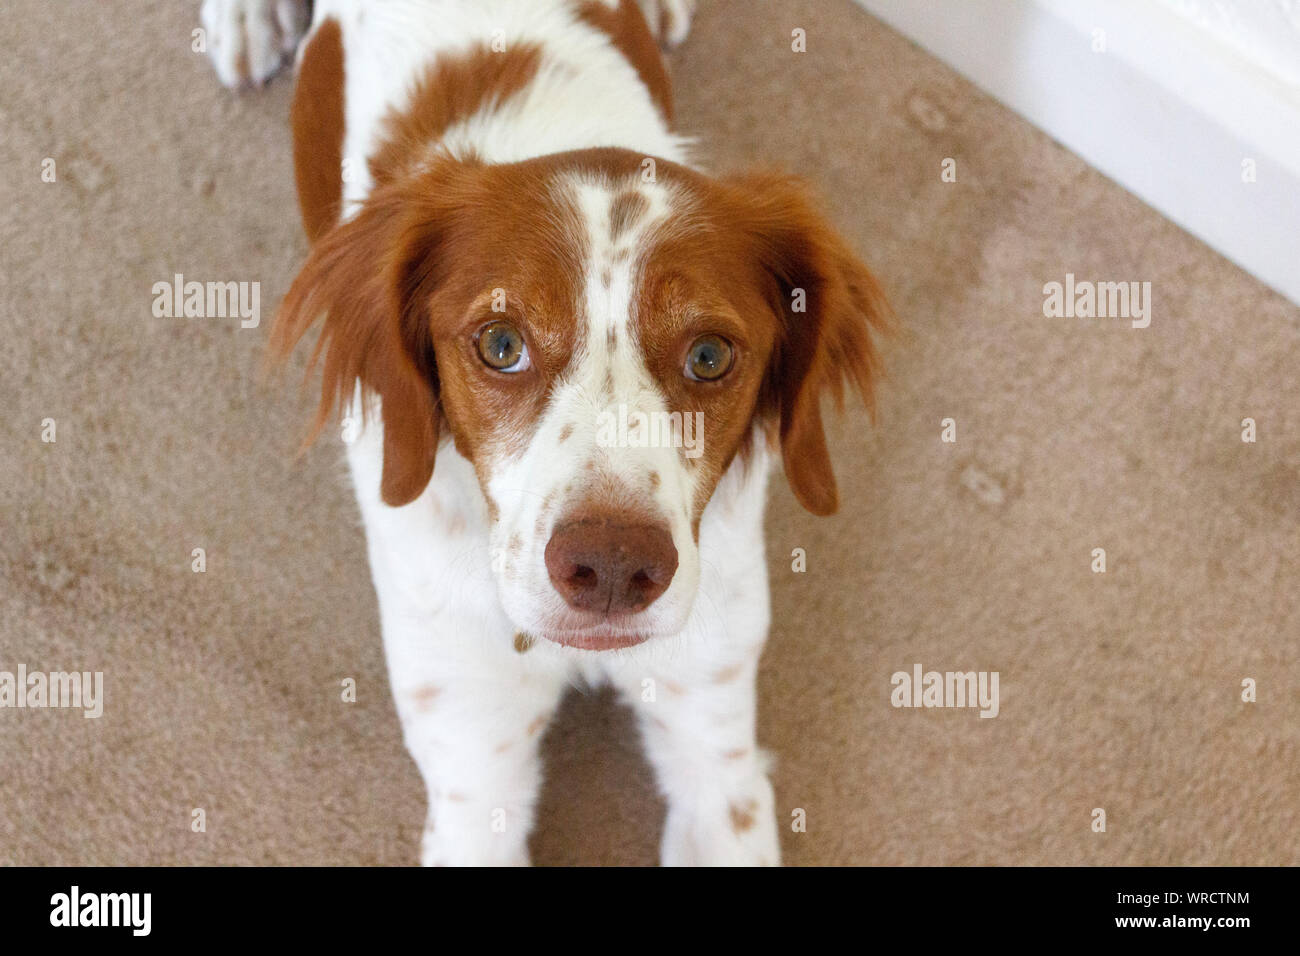 Portrait of Brittany or Breton Spaniel Dog Stock Photo